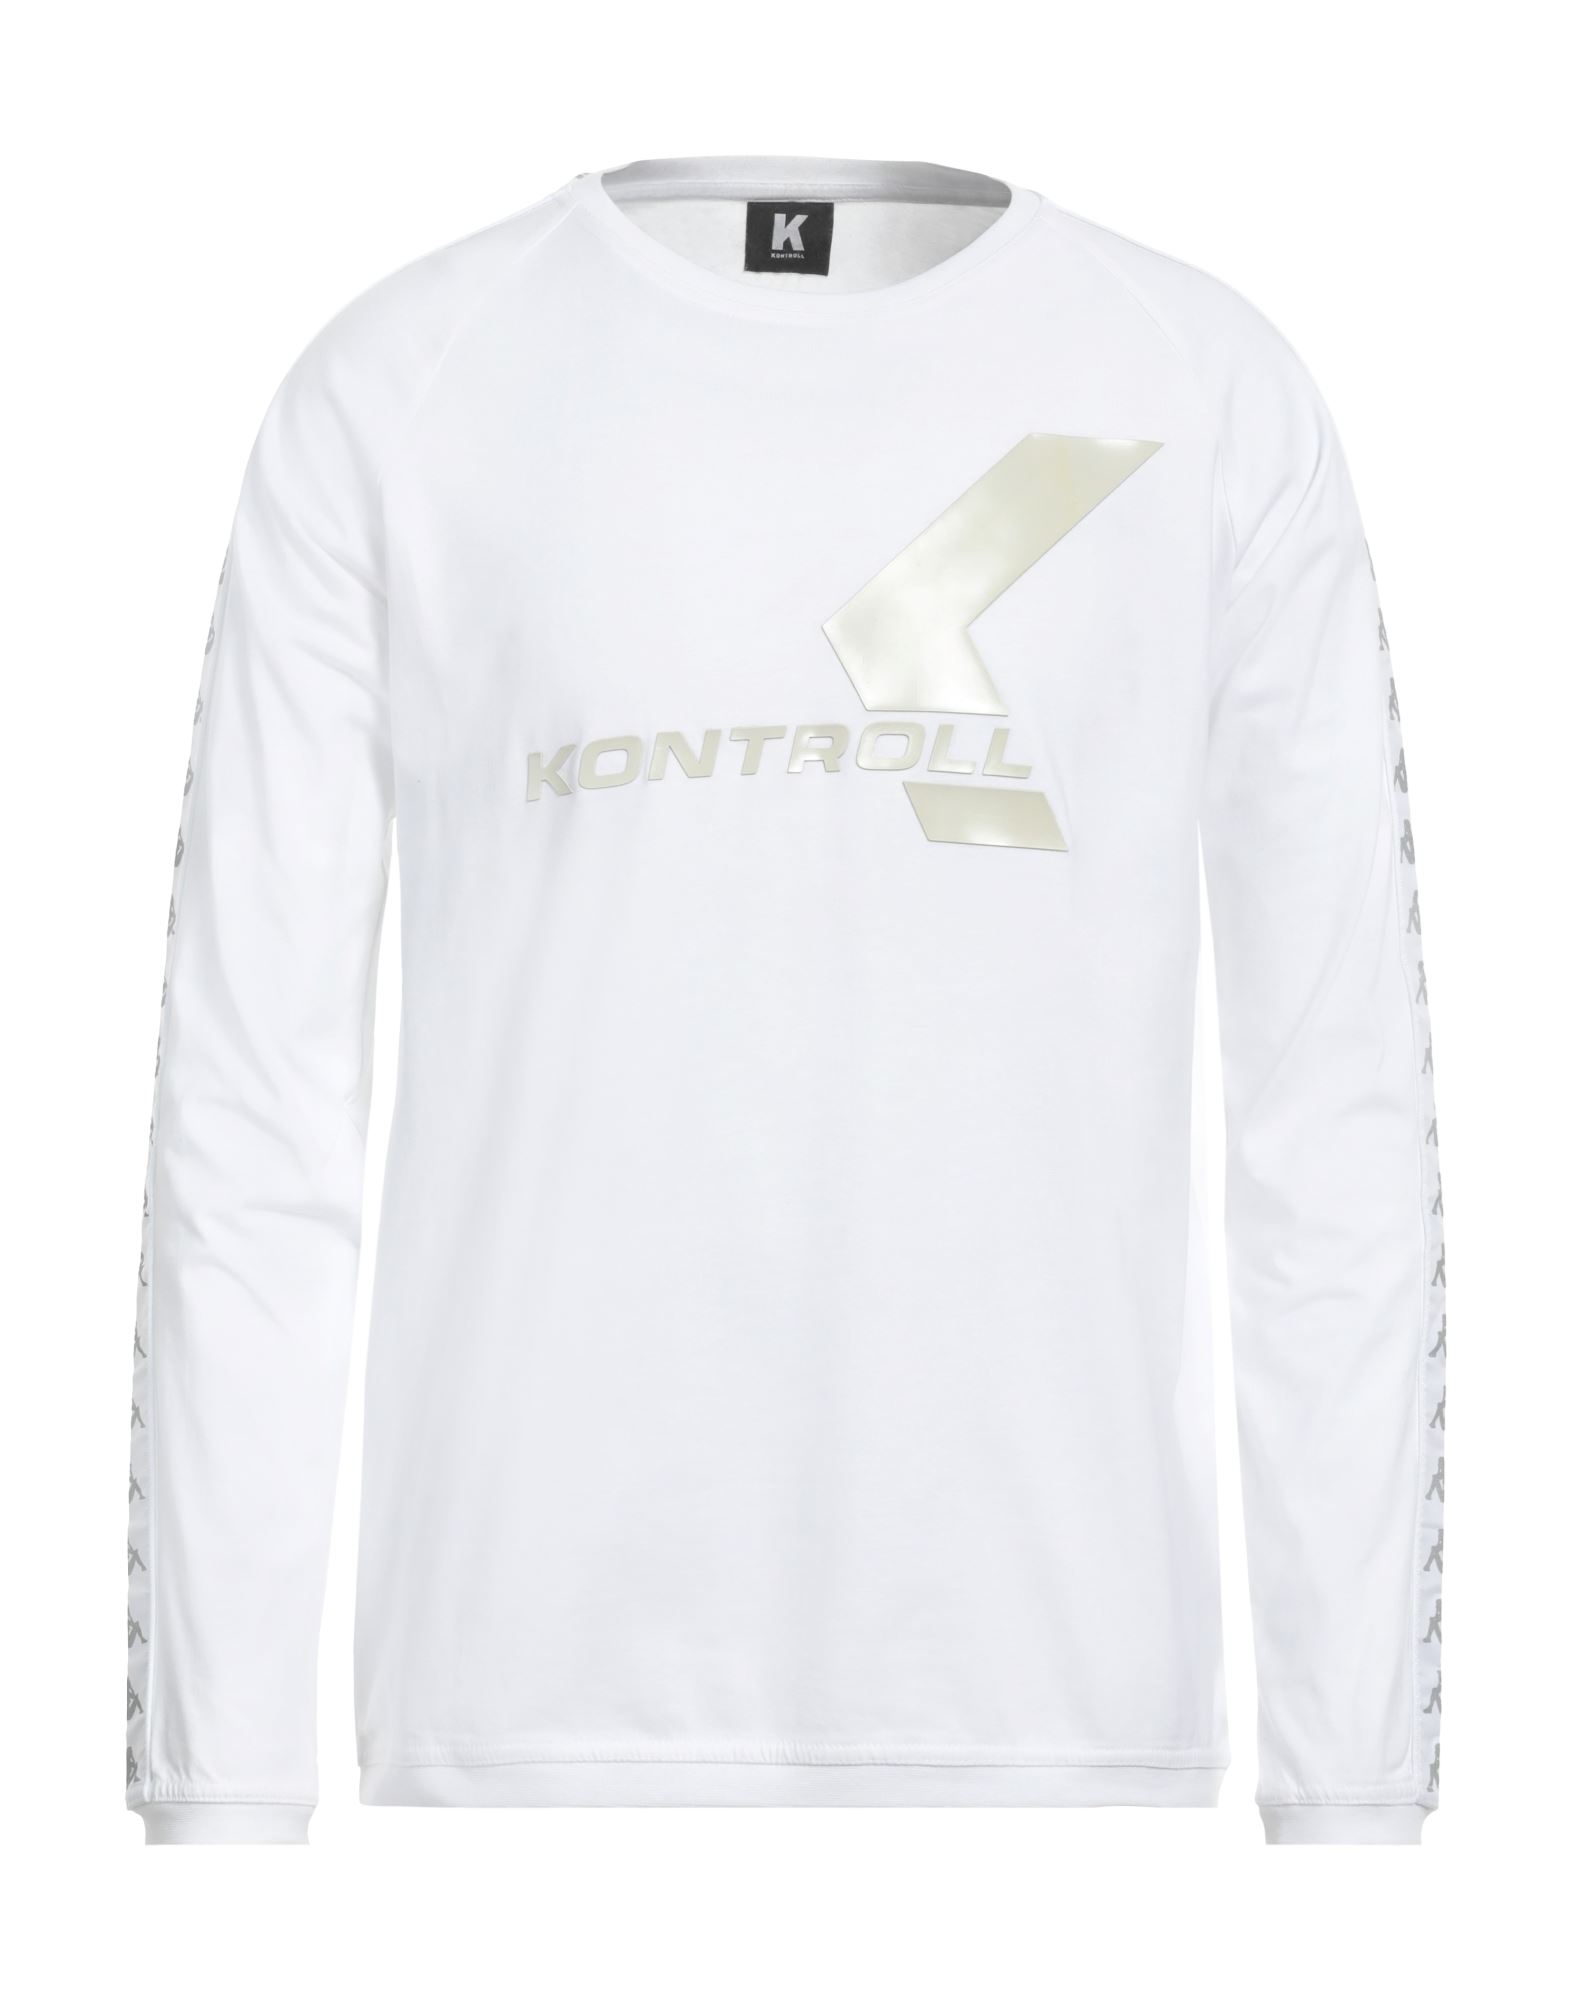 《送料無料》K KONTROLL メンズ T シャツ ホワイト S コットン 100% KONTROLL BANDA LONG SLEEVE